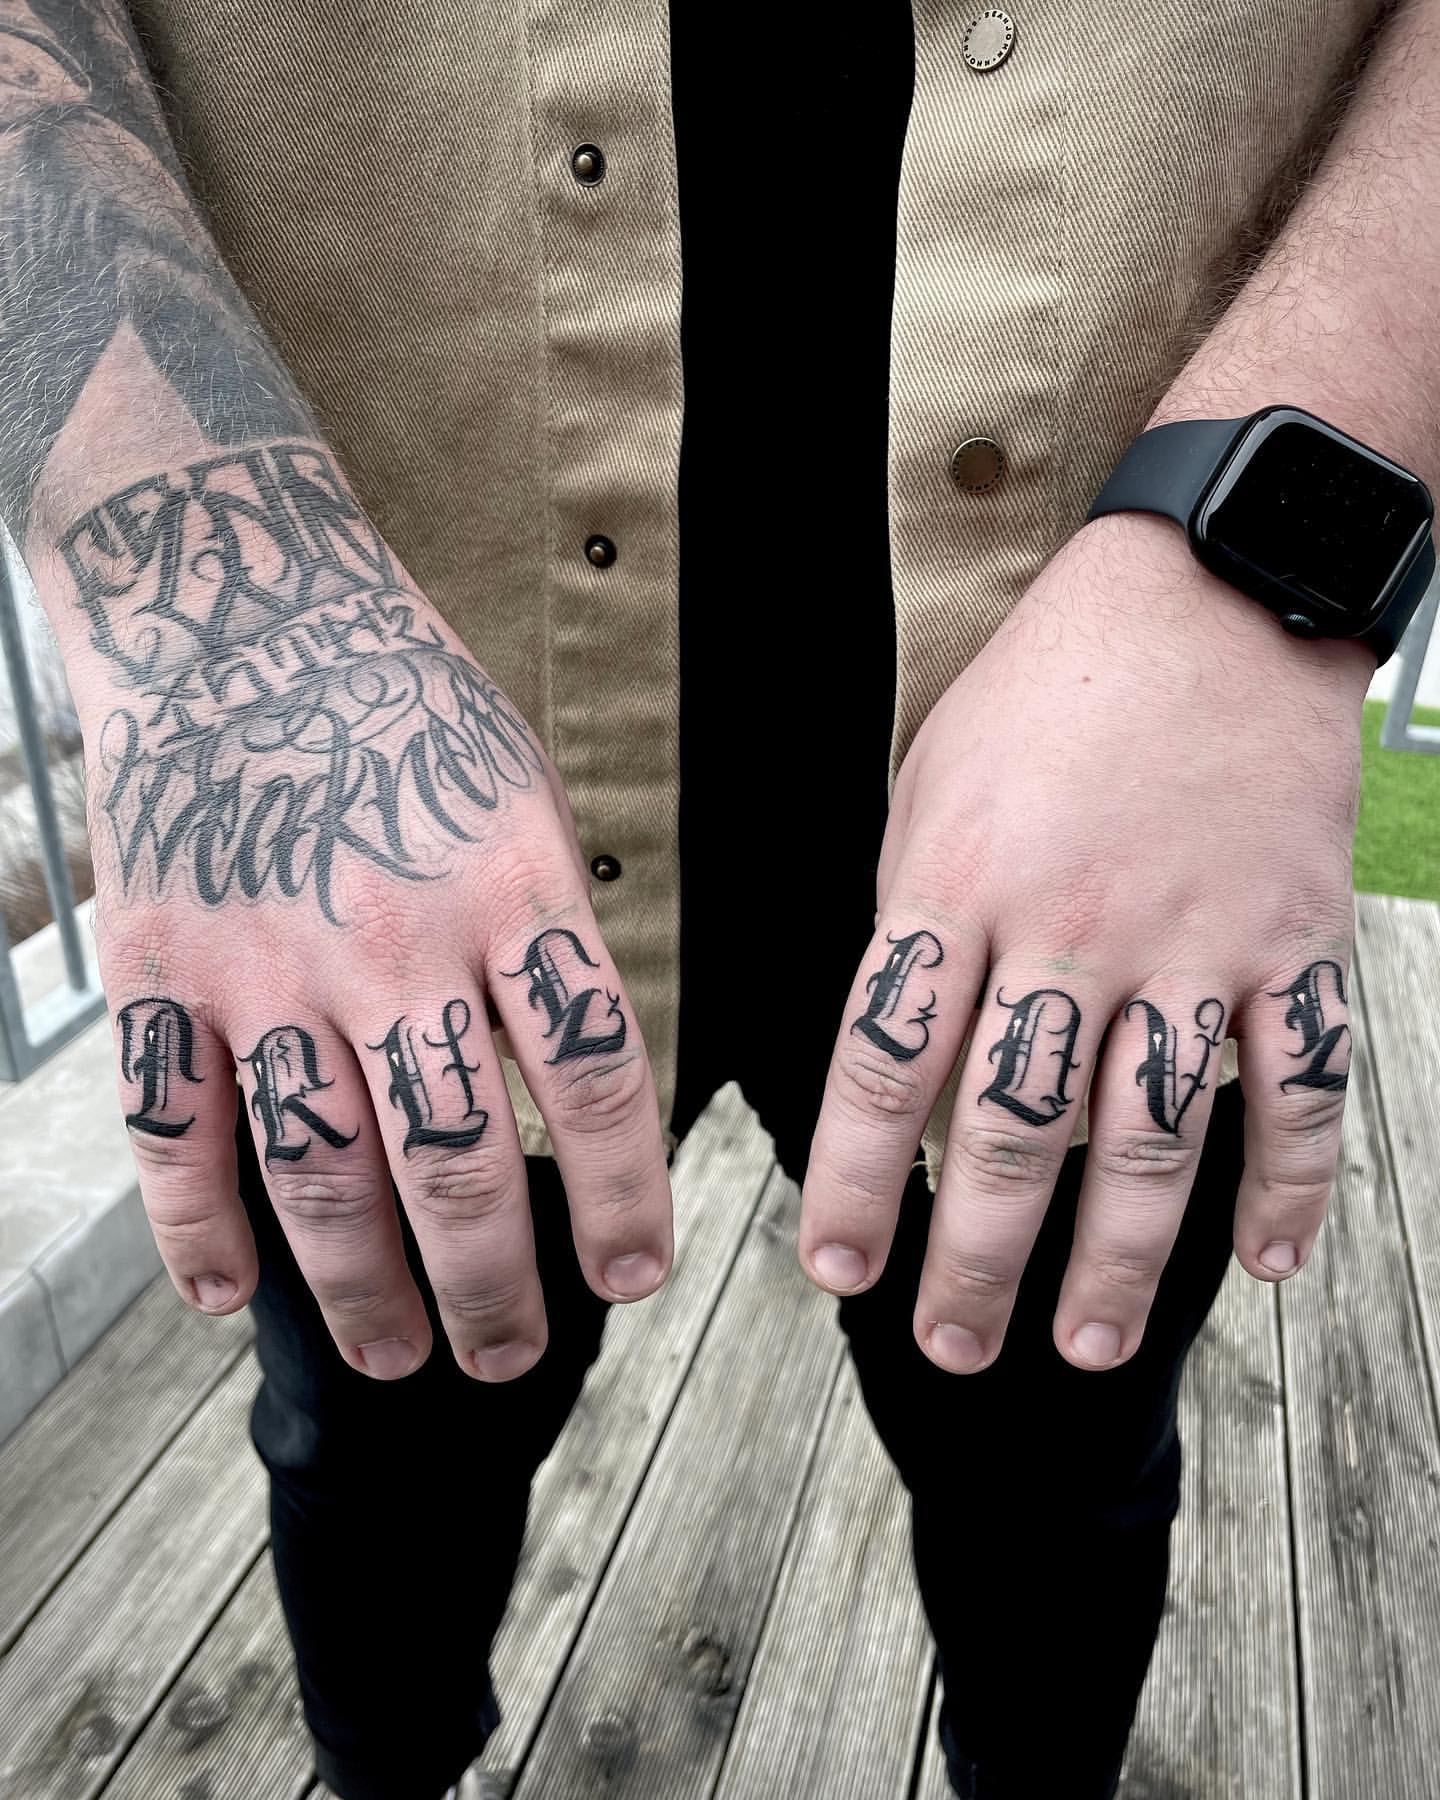 2018 vs today, finger tattoos : r/agedtattoos